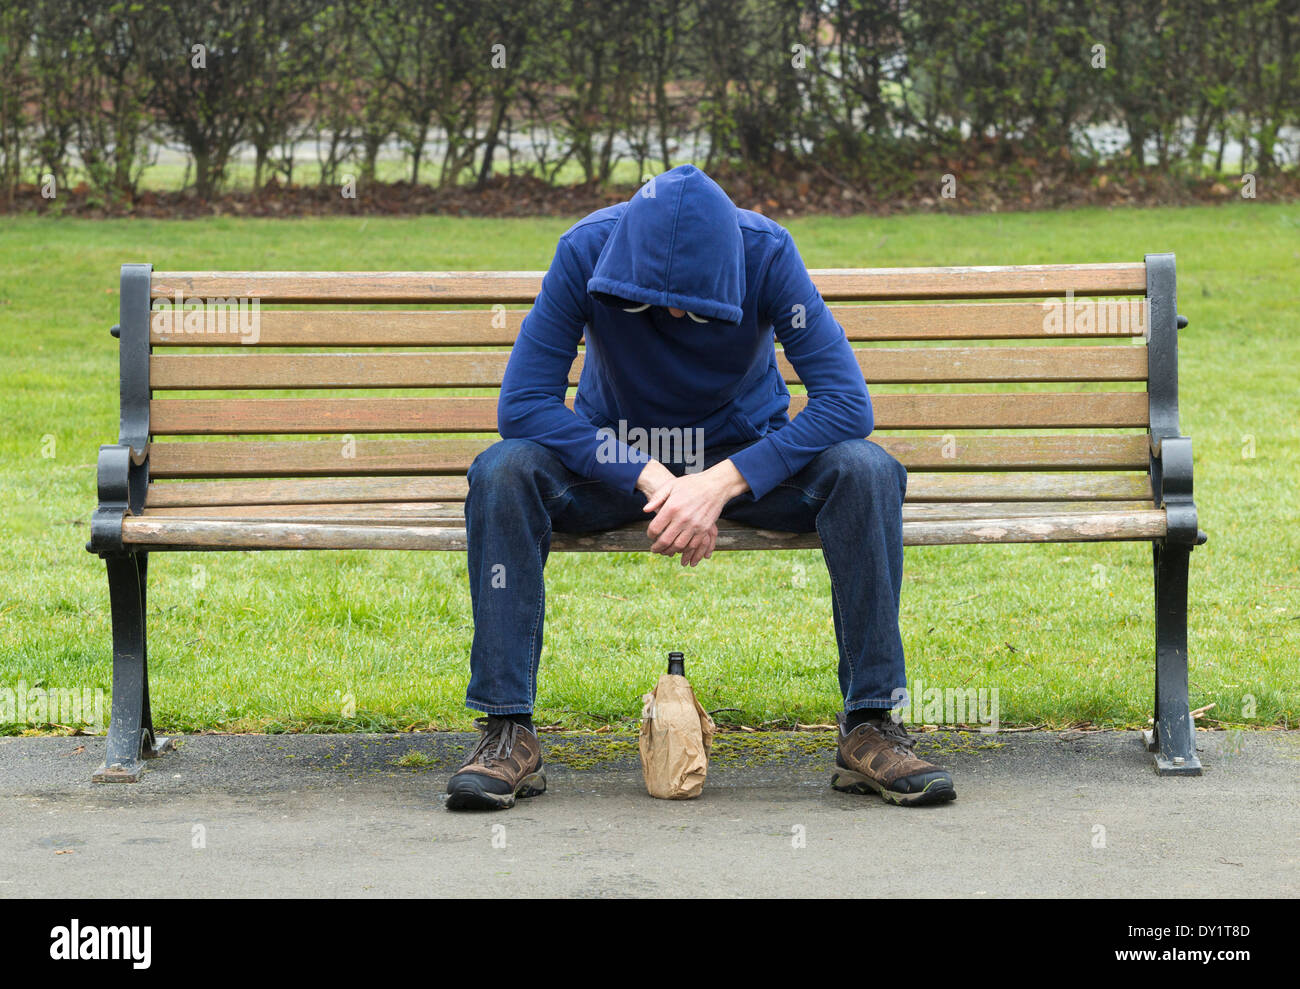 Hombres vistiendo hoodie sentado en un banco del parque bebiendo alcohol Foto de stock